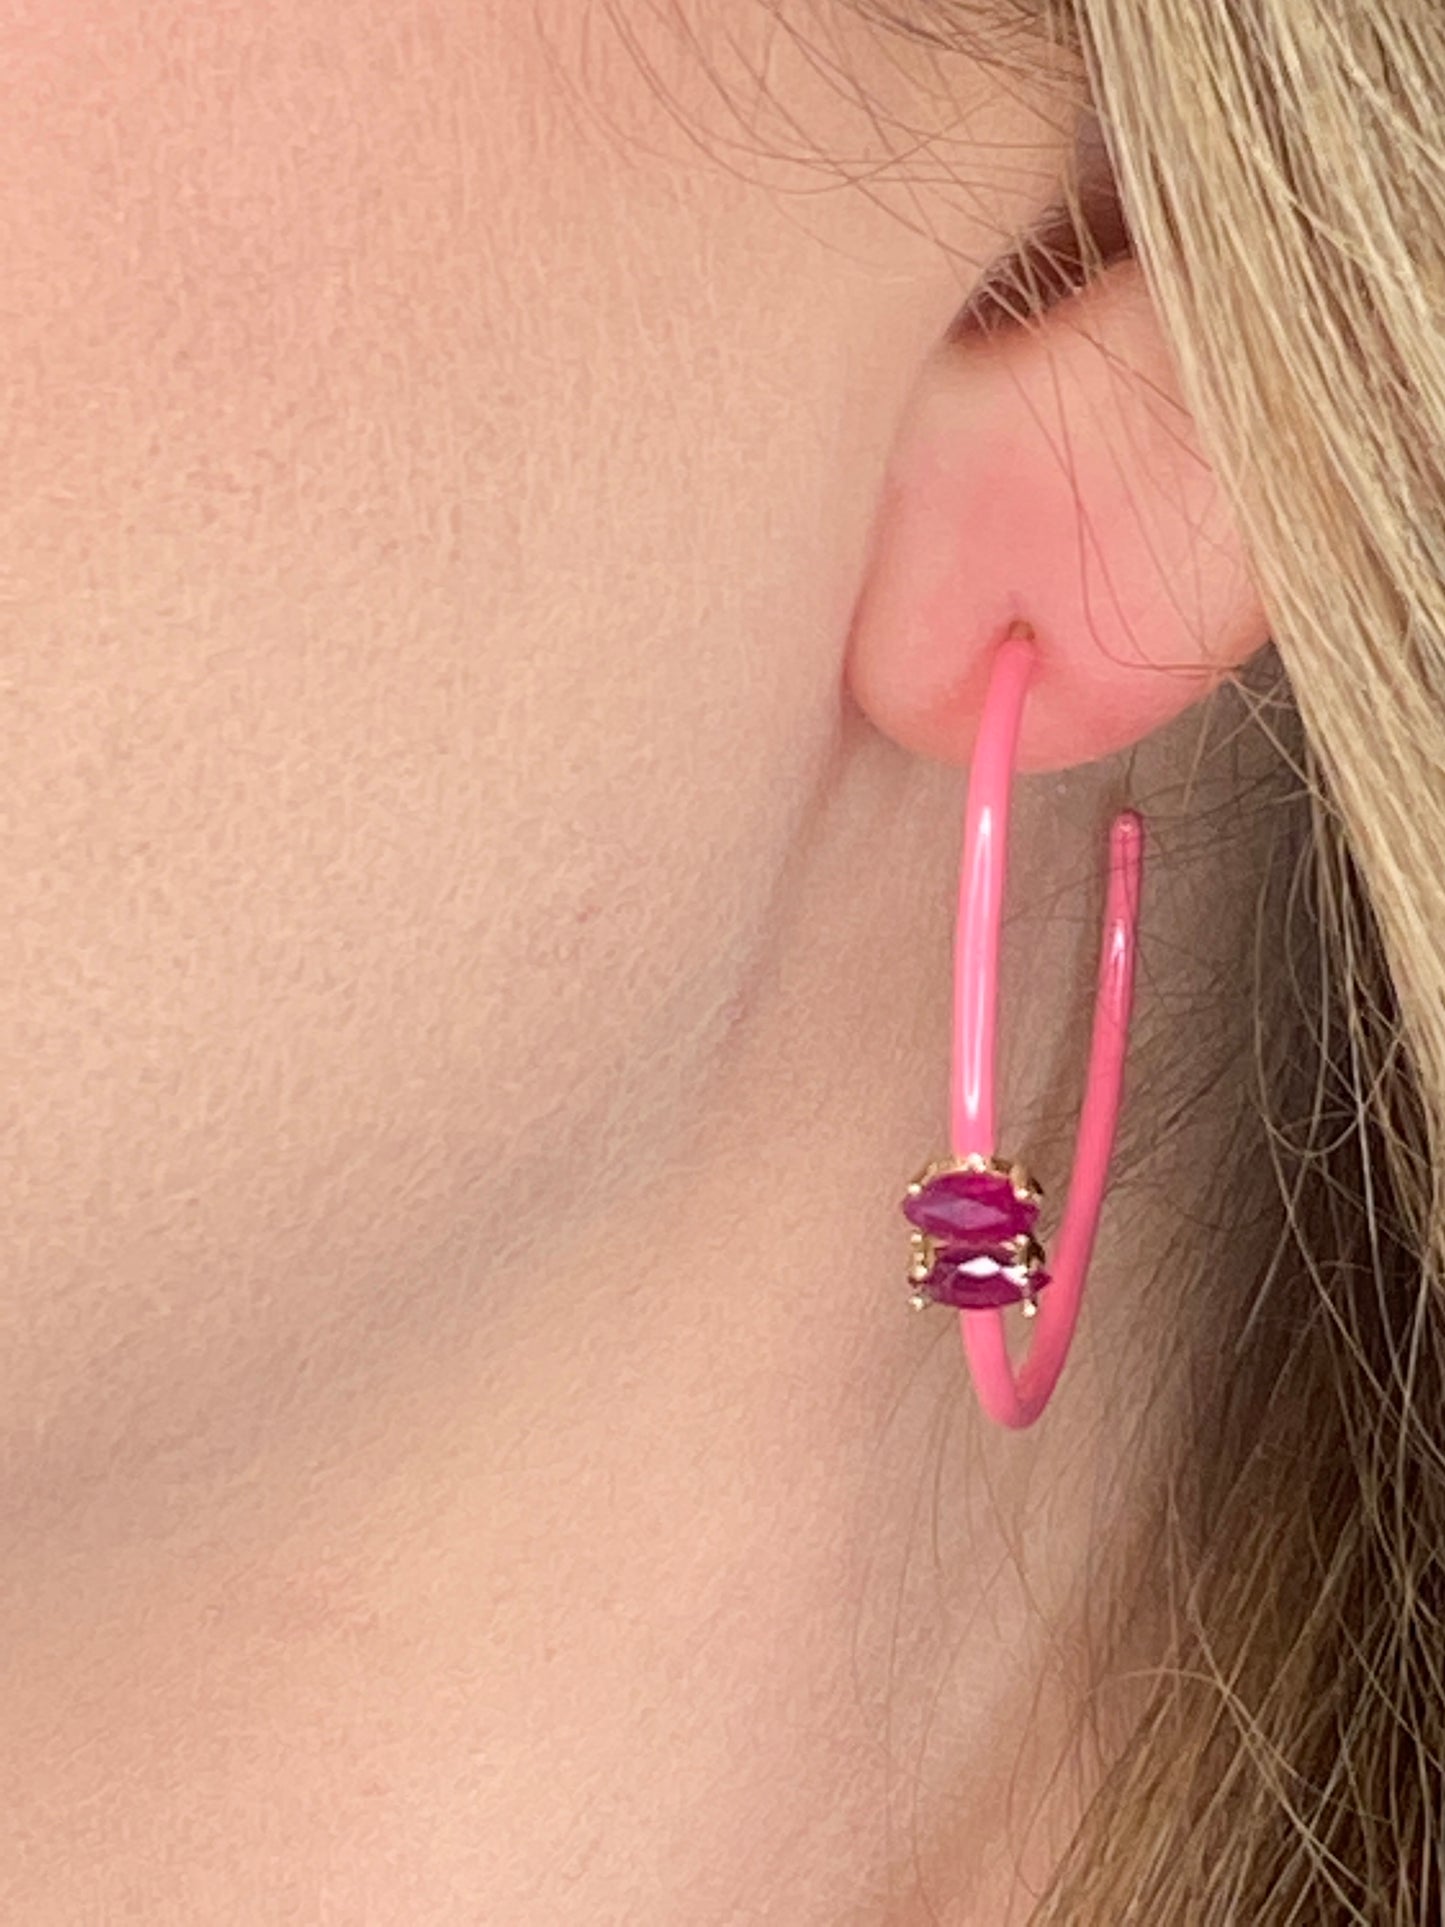 14K Gold Marquise Cut Ruby + Pink Enamel Valley Girl Hoop Earrings